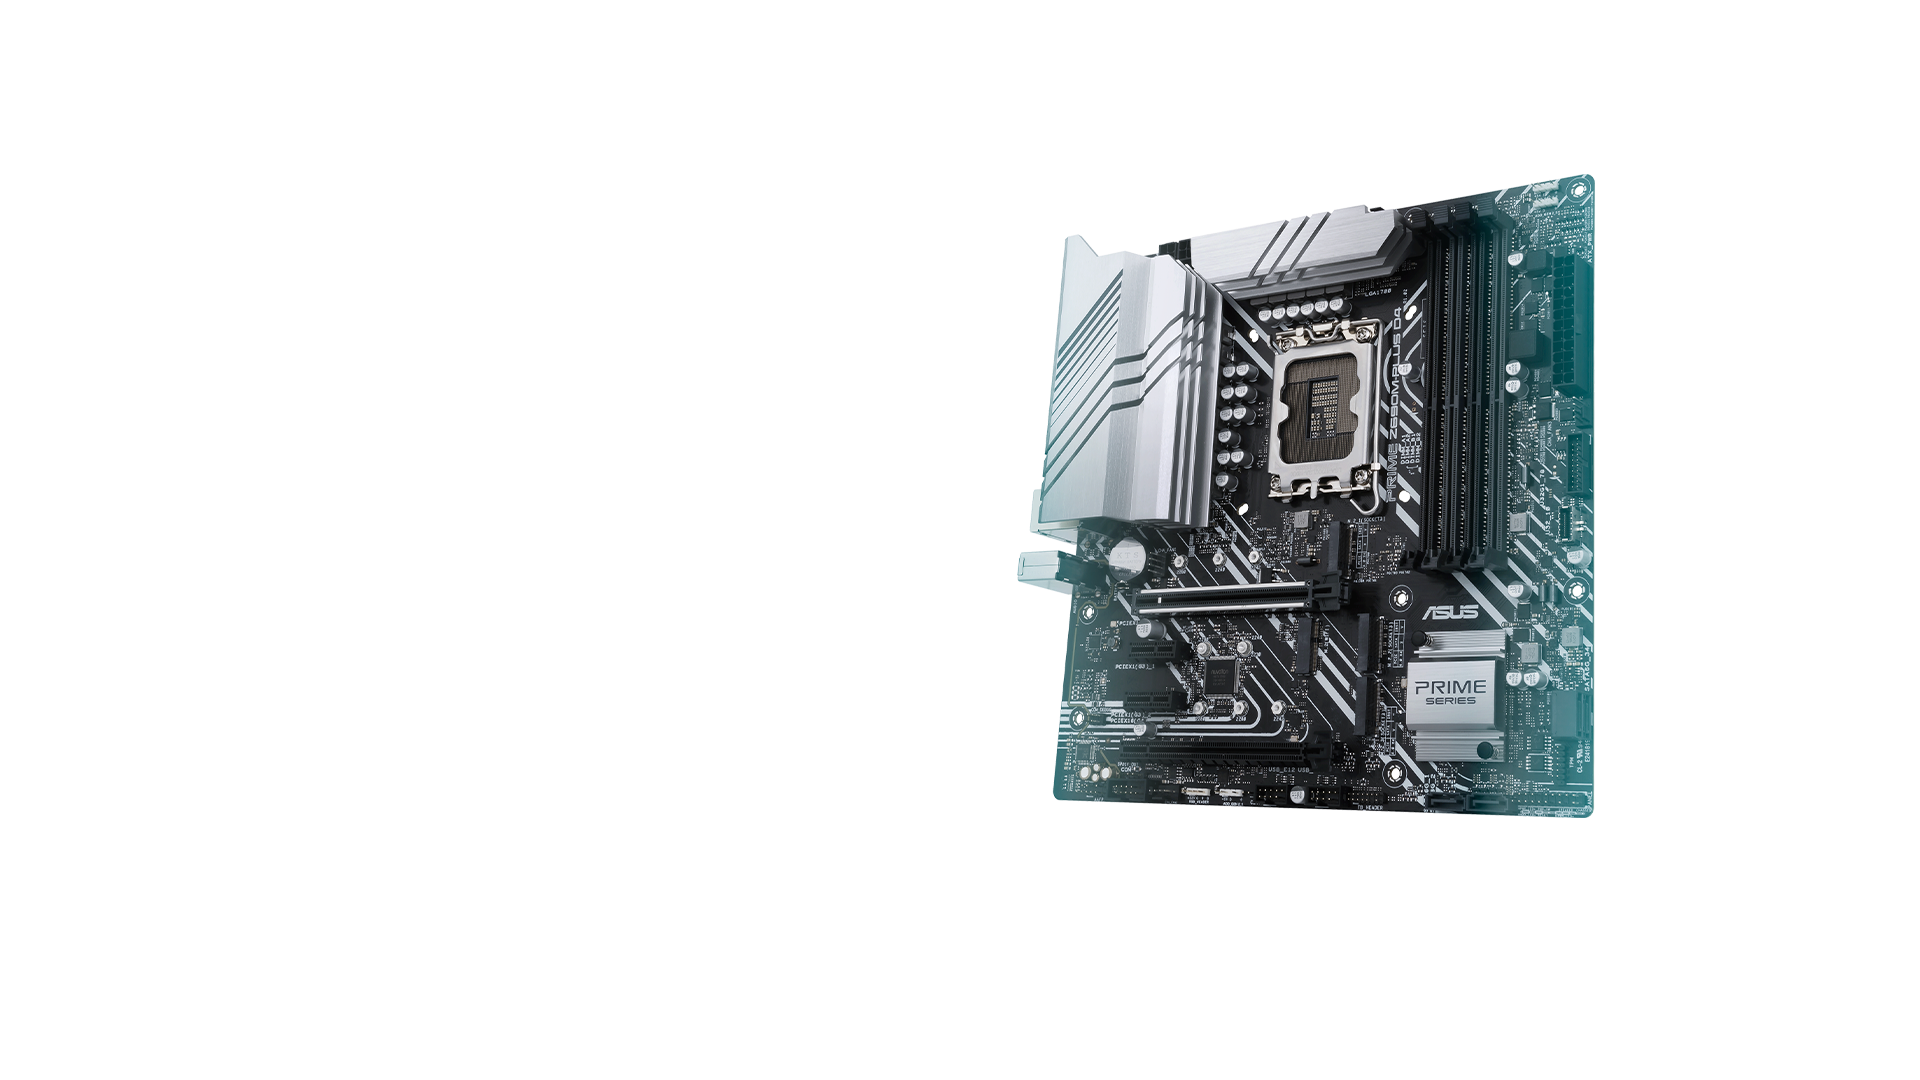 La PRIME Z690M-Plus D4 offre aux utilisateurs et amateurs de montage PC des options intelligentes d'amélioration des performances, paramétrables via des logiciels et micrologiciels intuitifs.